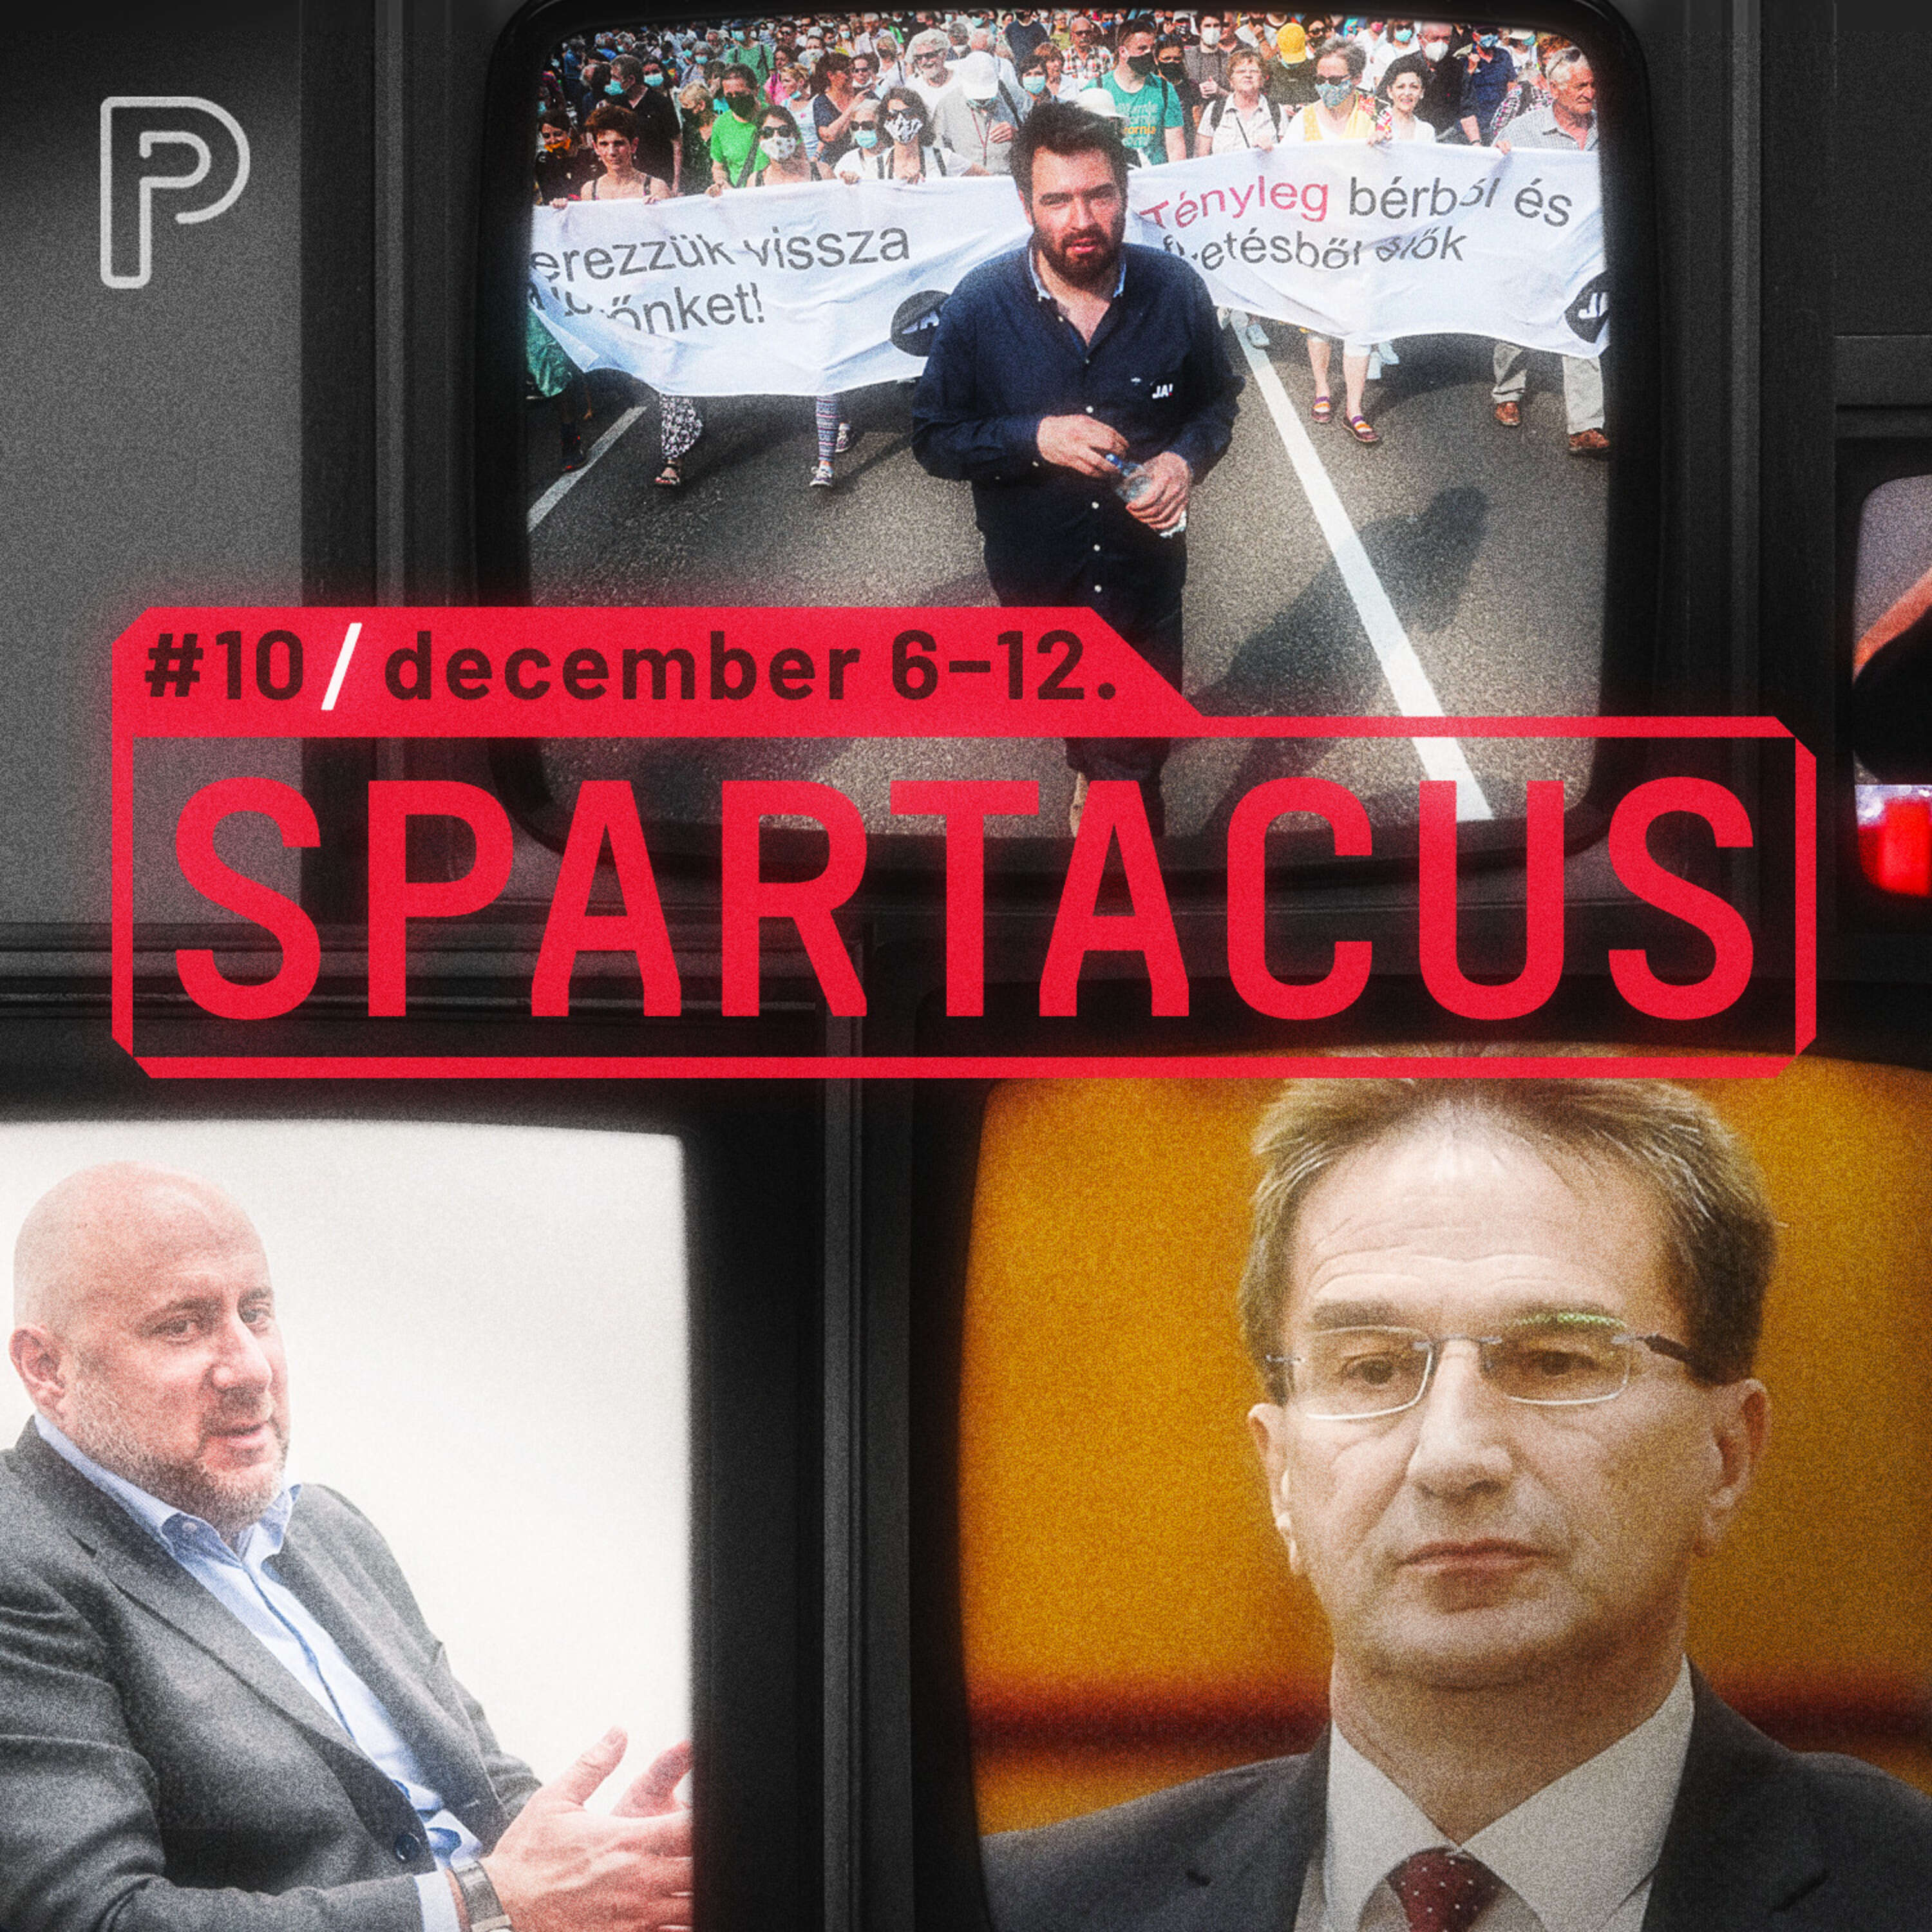 Miért nem sikerült a Fidesznek eltussolni a Völner-botrányt? | Spartacus #10